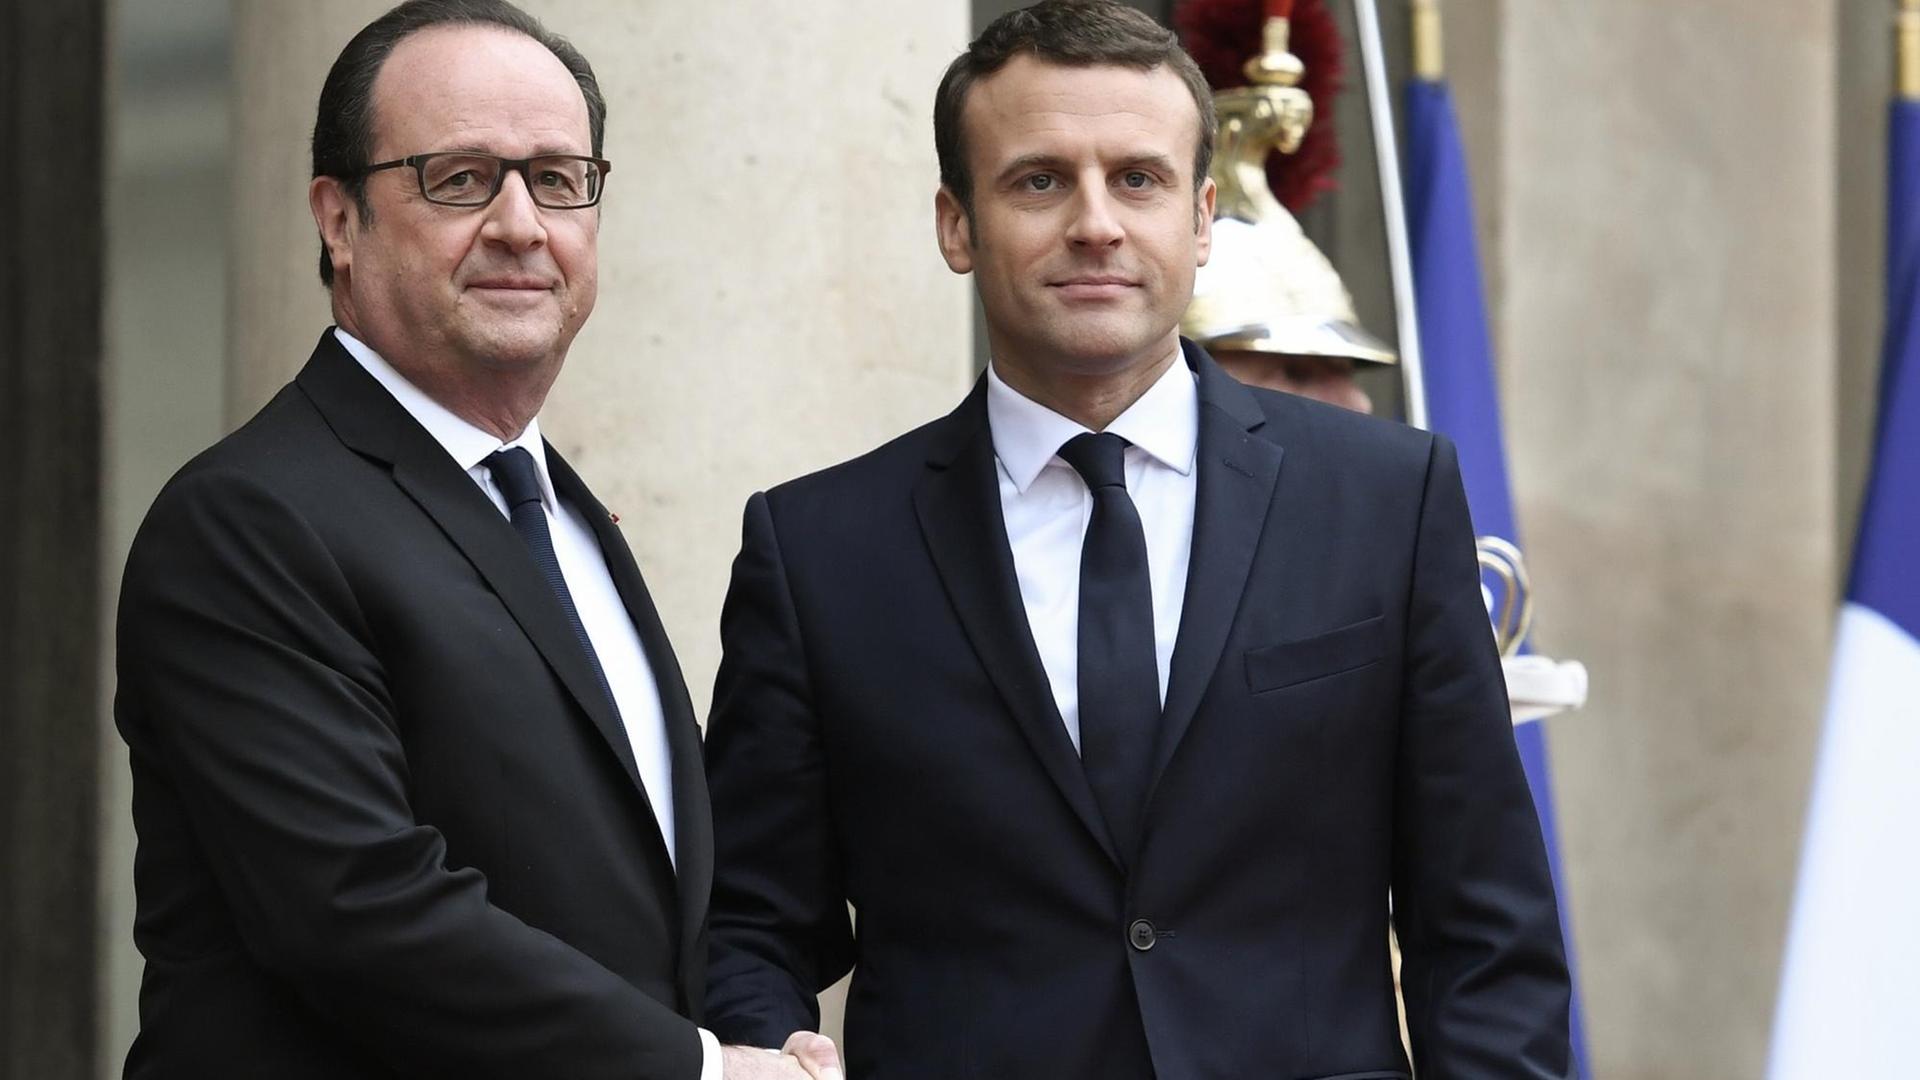 Francois Hollande begrüßt seinen Amtsnachfolger Emmanuel Macron am14. Mai 2017 im Elysée-Palast. Die beiden schütteln sich die Hände und lächeln in die Kameras.